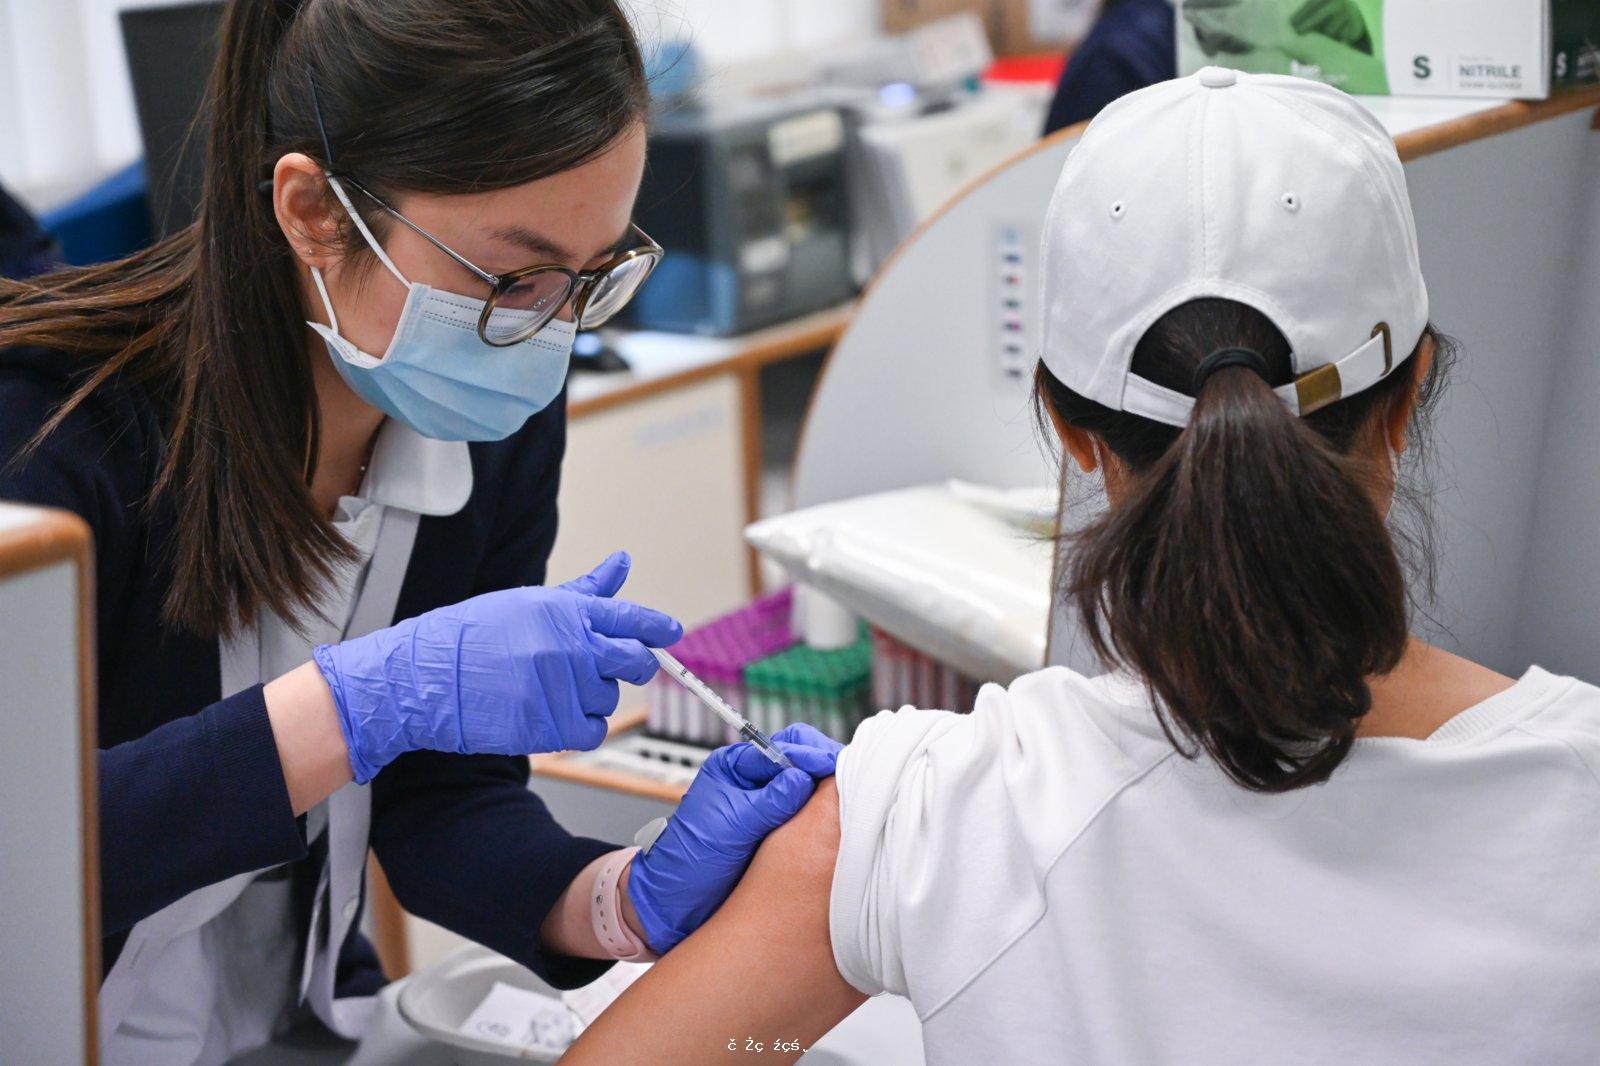 澳門當局表示有包裝瑕疵的疫苗均未被使用